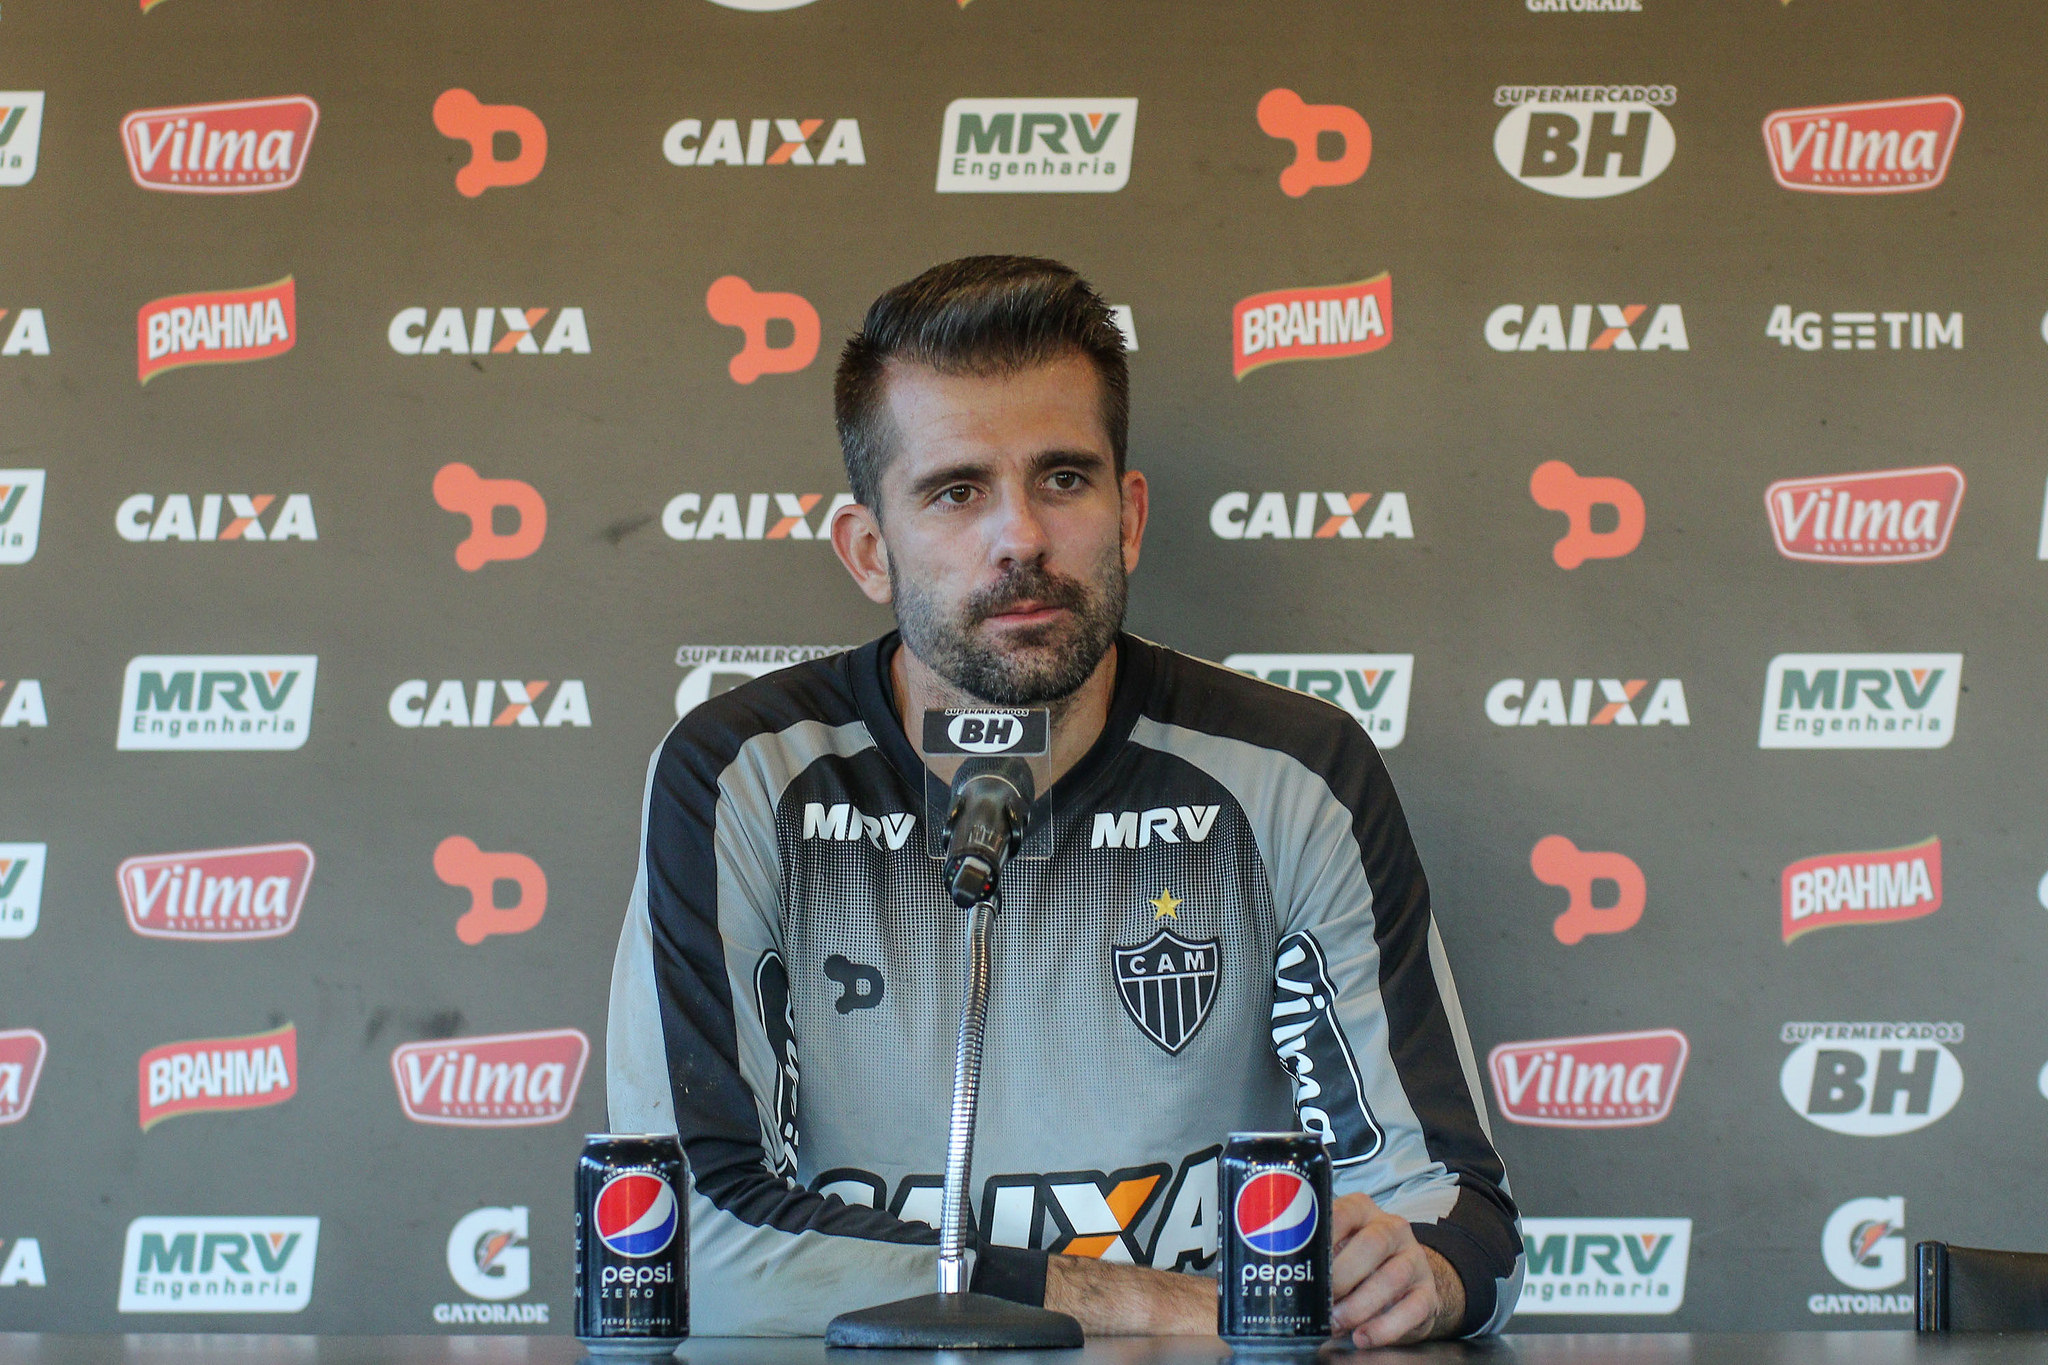 Mesmo com situações políticas, goleiro Victor afirma que grupo do Atlético-MG está focado na Série A